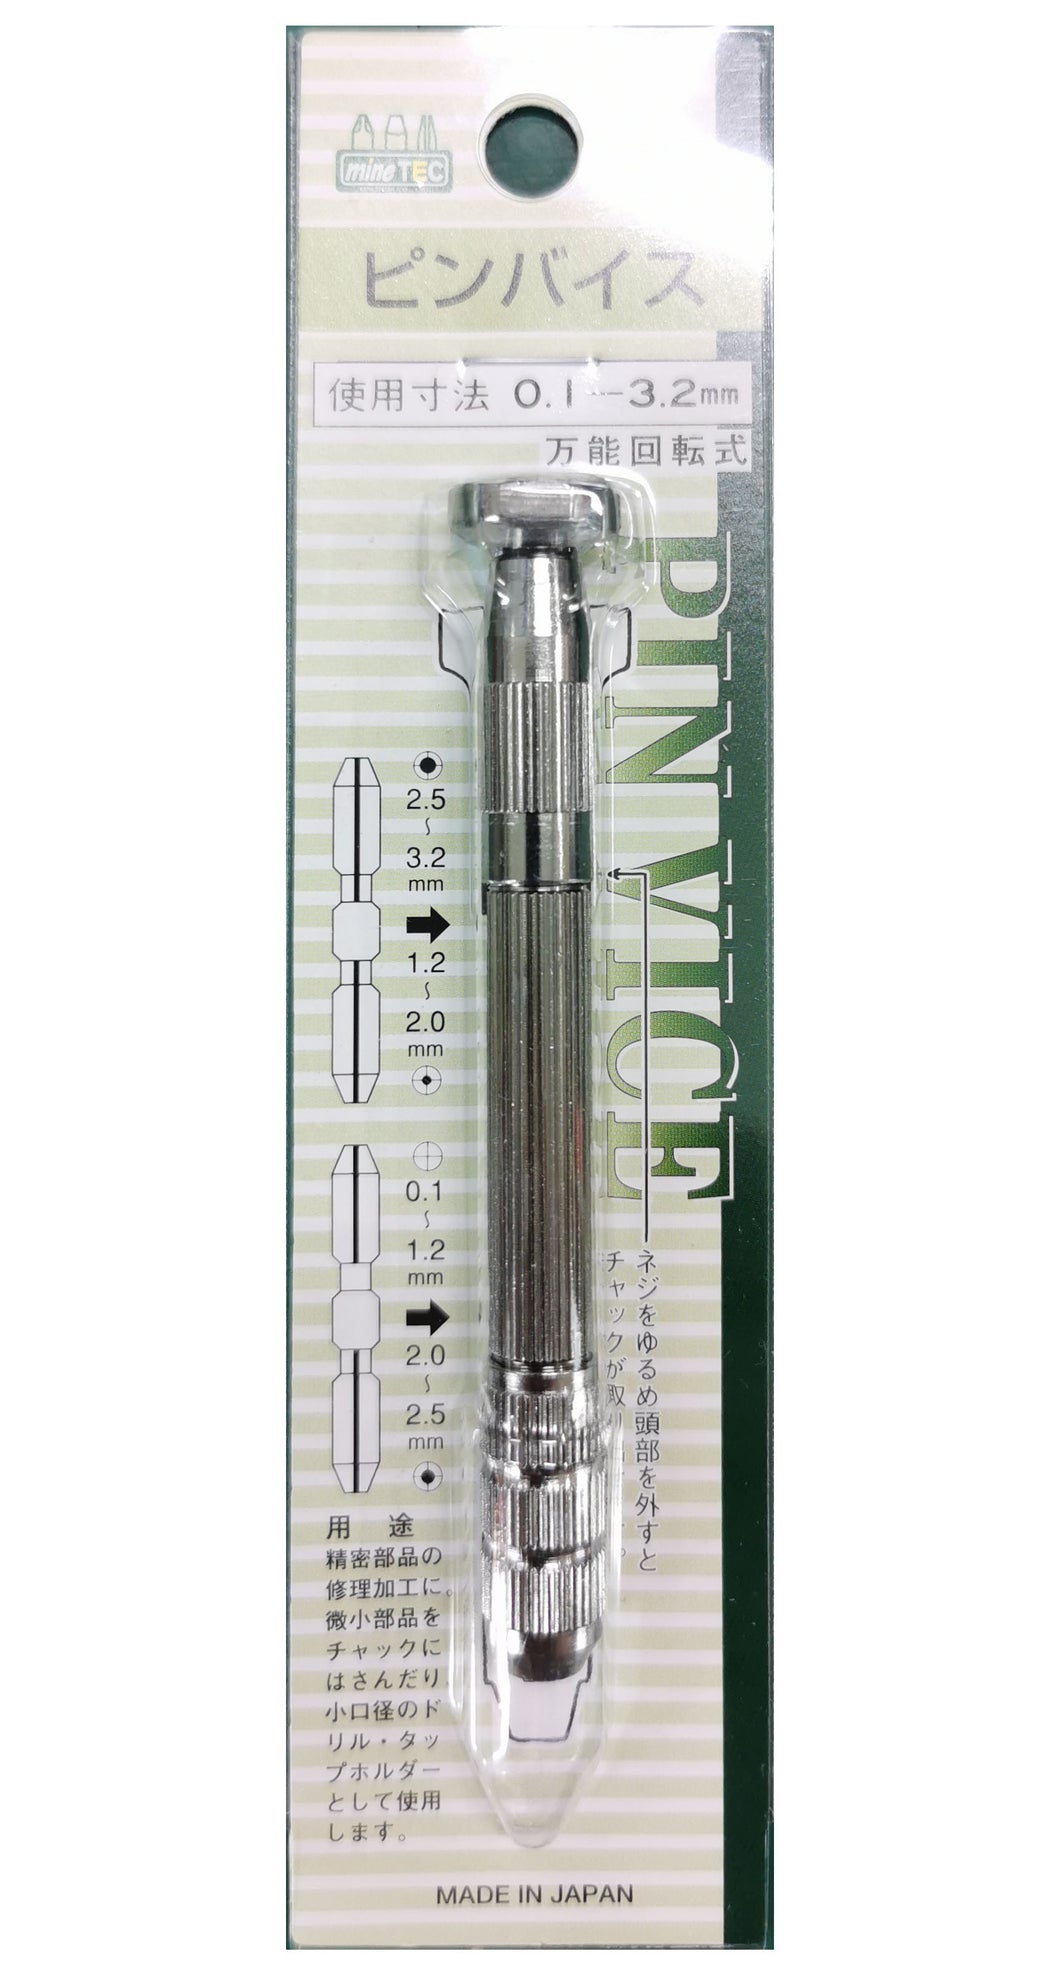 mineTEC L-4B PIN VICE 0.1 - 3.2mm